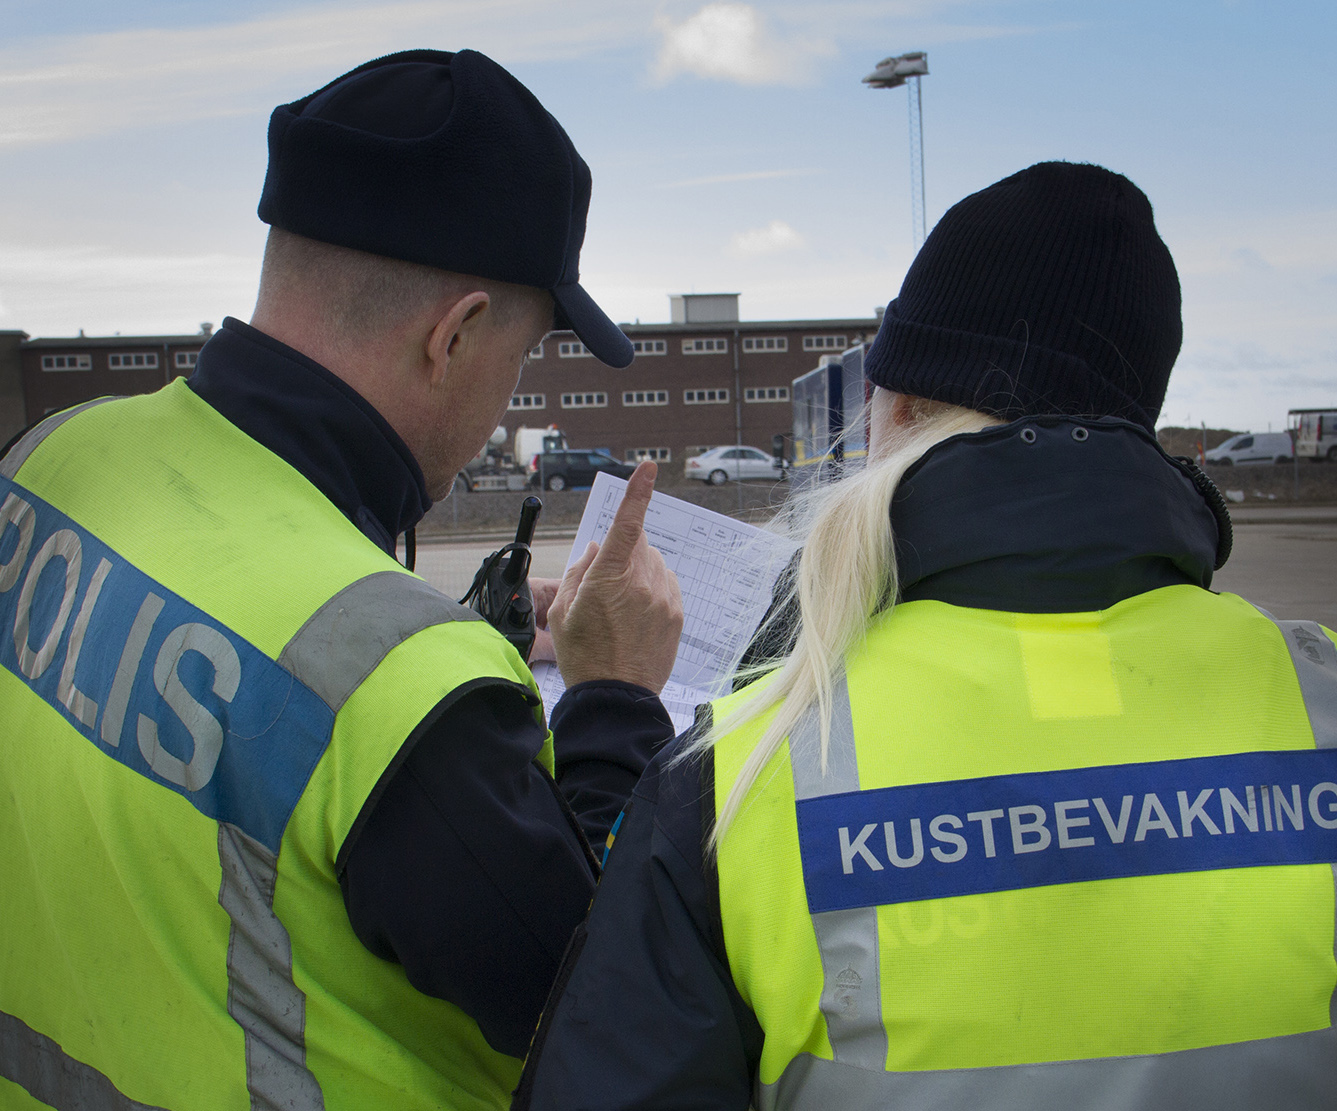 Trafikpolisen och Kustbevakningen har ett fint samarbete där de gärna konsulterar varandra under de kontroller där de båda myndigheterna samverkar. Foto: Göran Rosengren